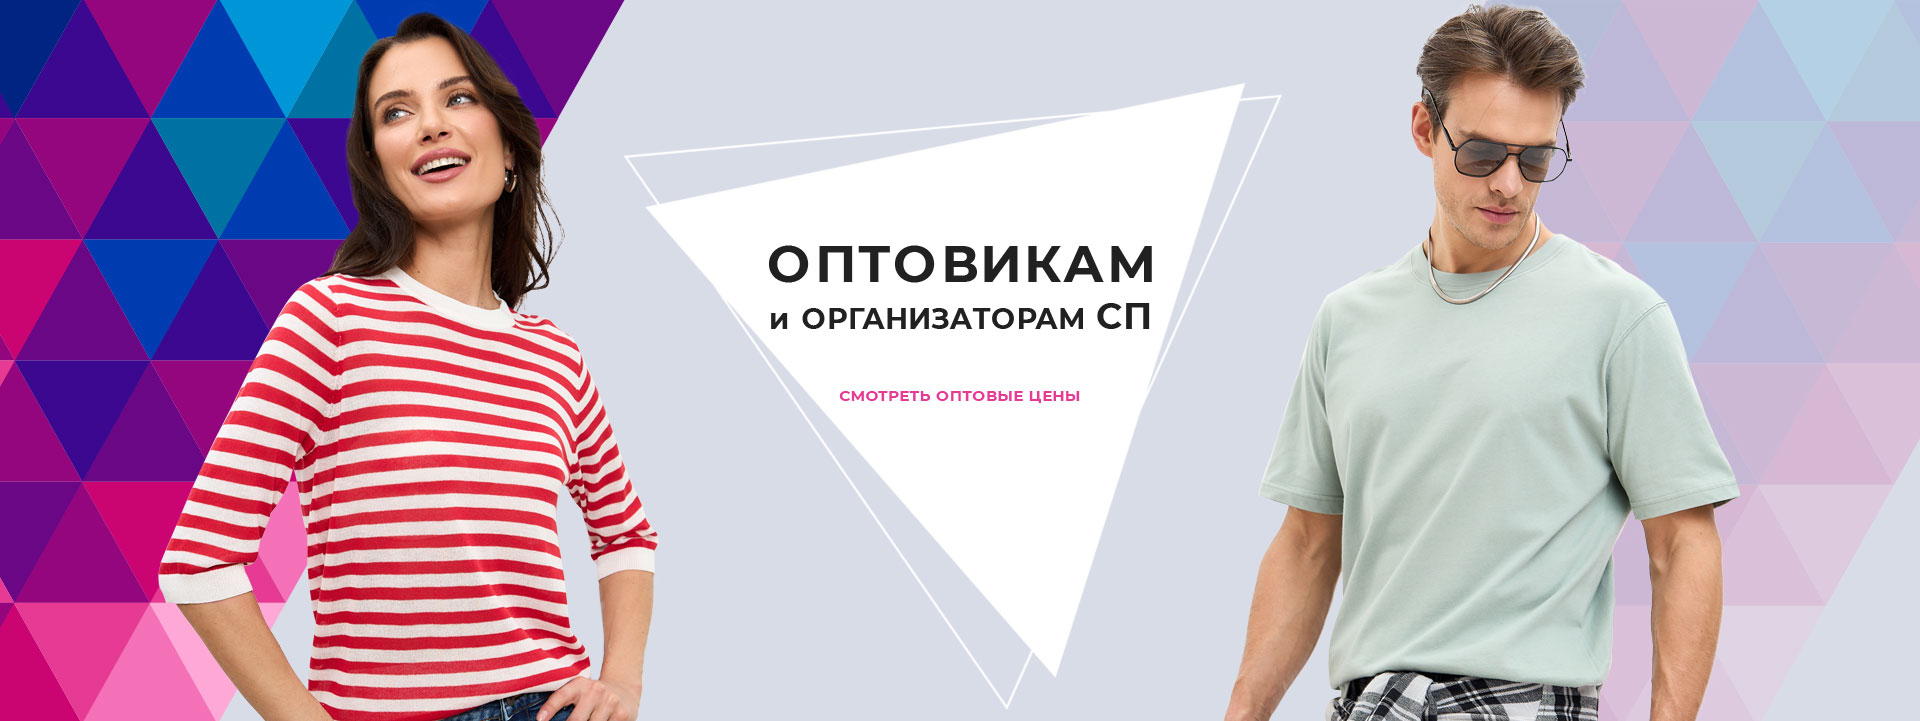 Оптовикам и организаторам совместных закупок. Одежда оптом от производителя в Москве. Интернет-магазин мужской и женской одежды АЗБУКАМОДА.